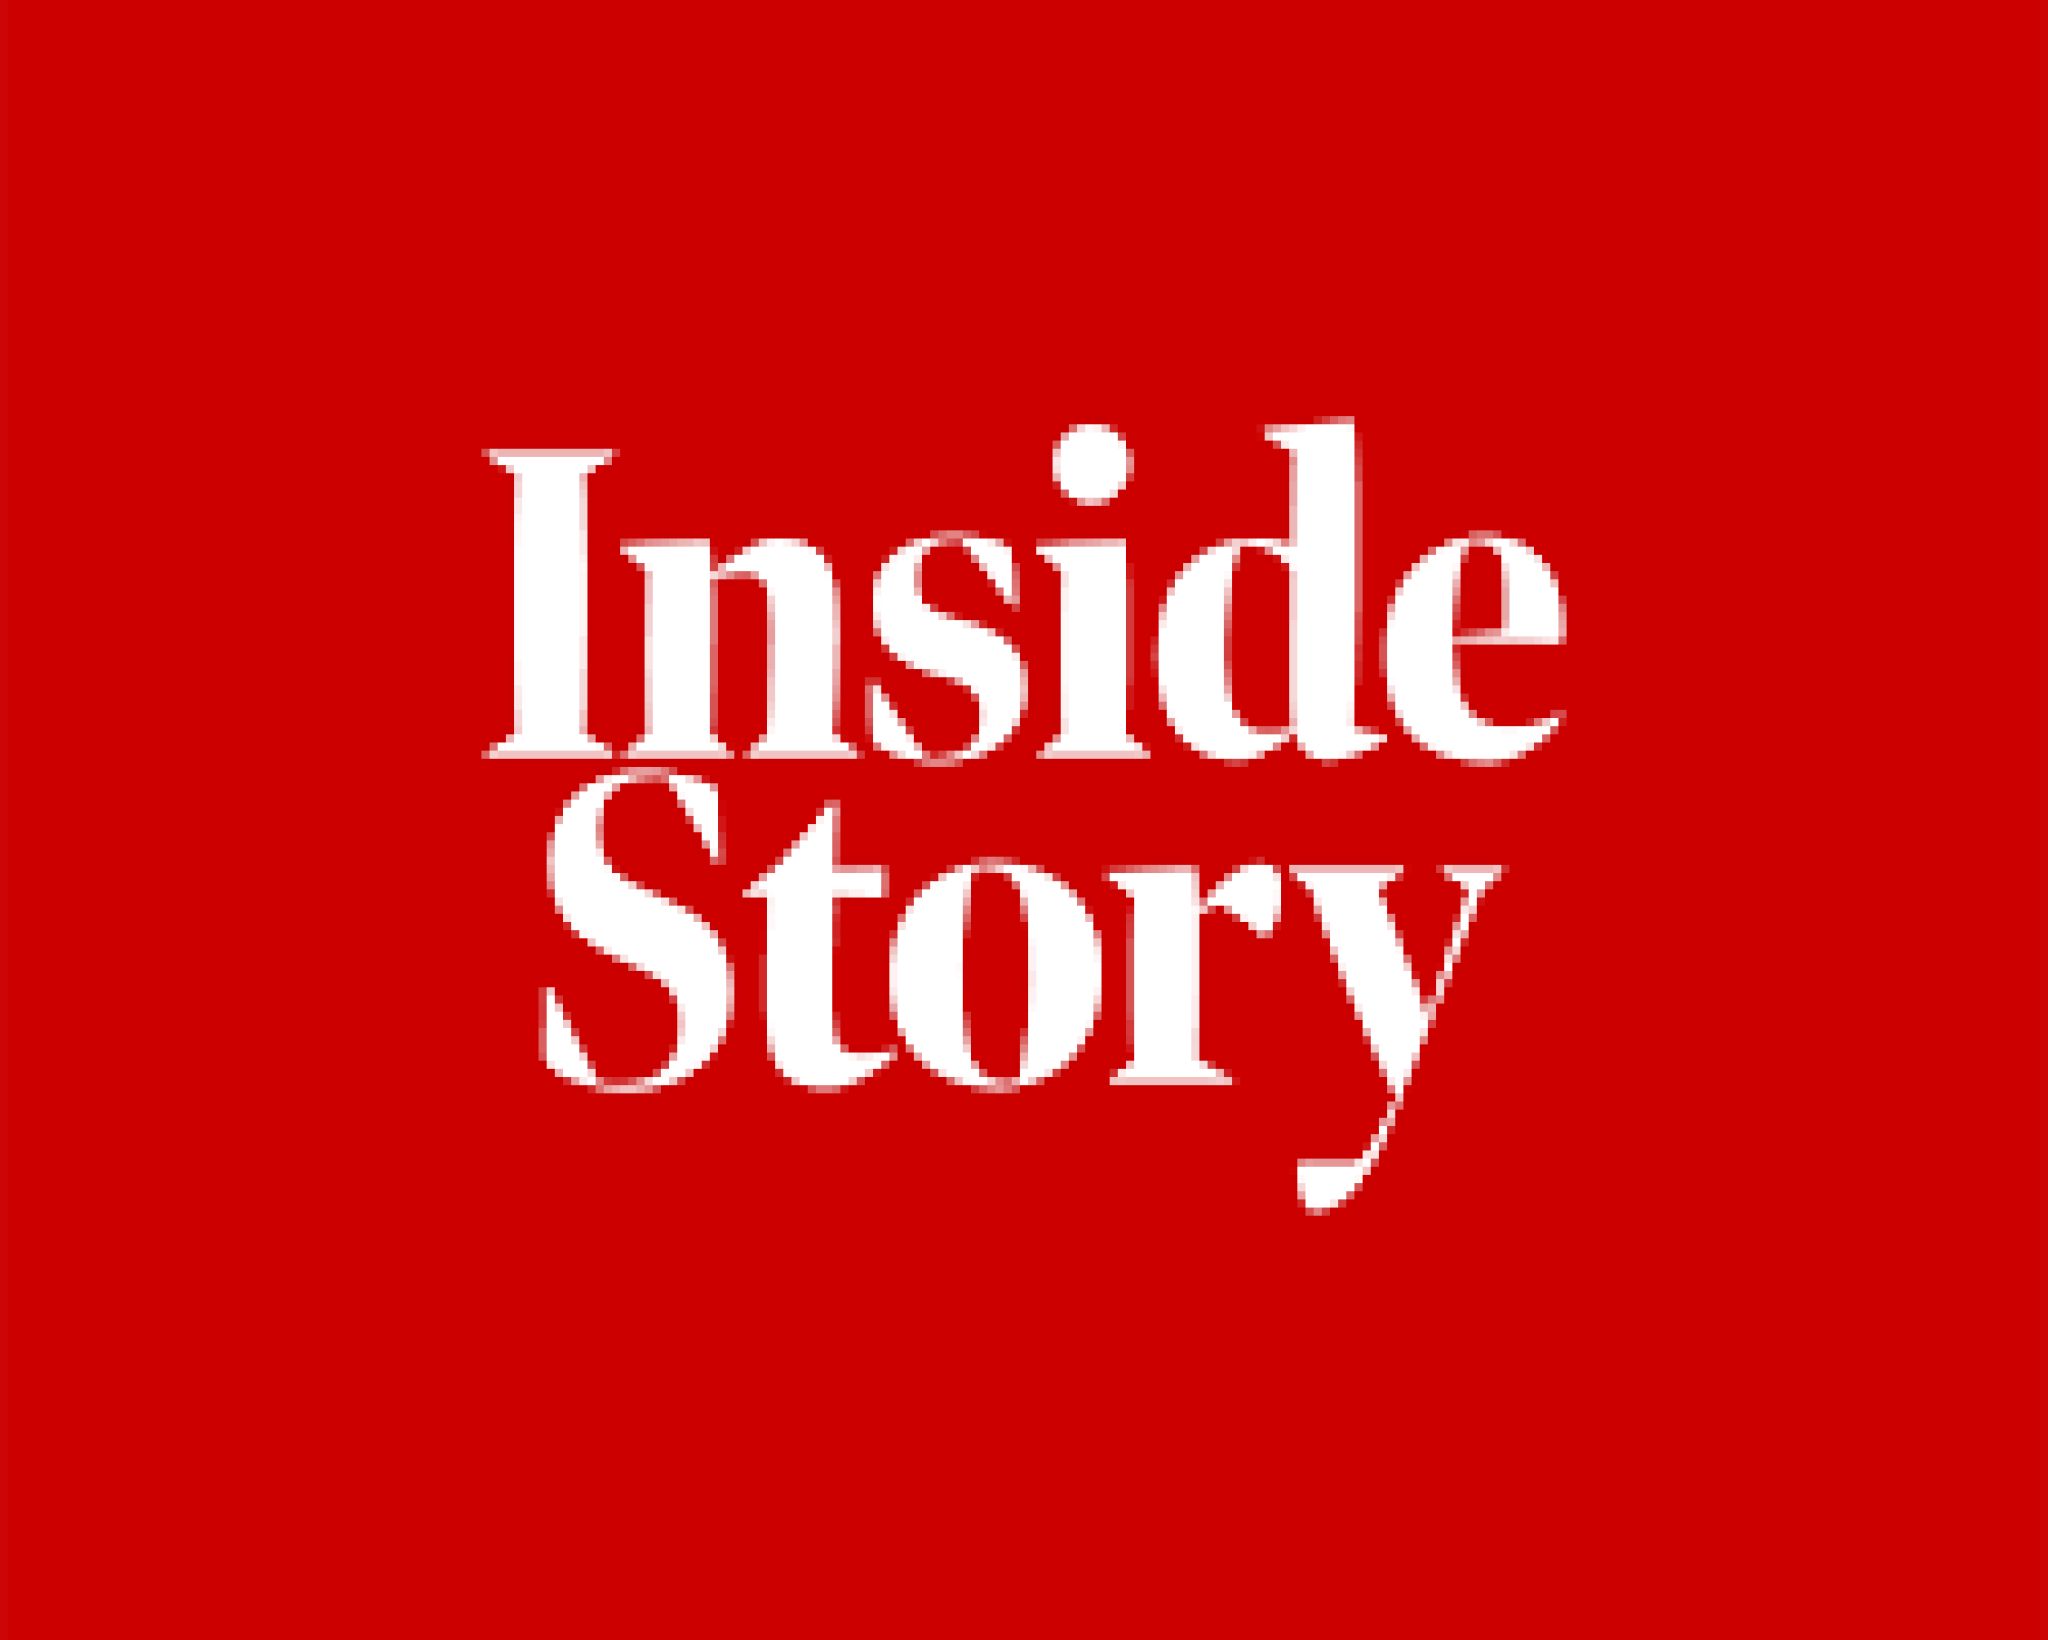 Inside Story logo